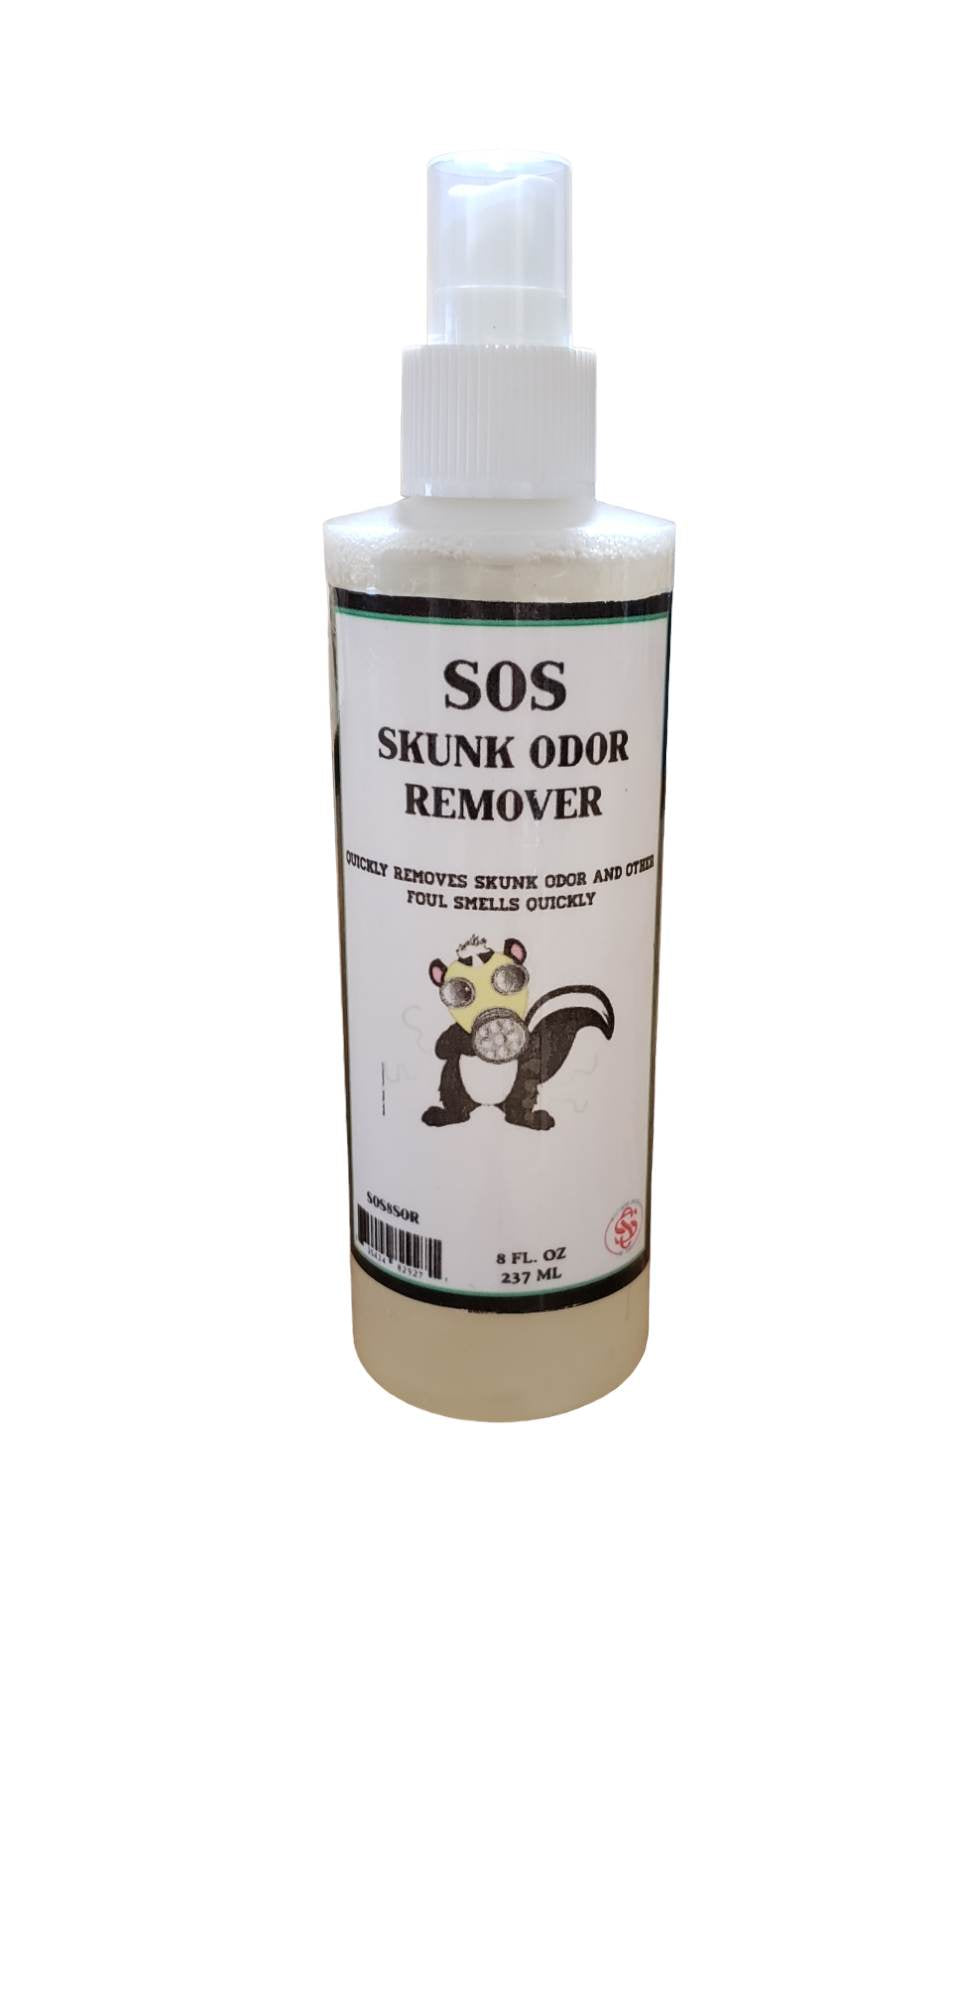 S.O.S Skunk Odor Remover